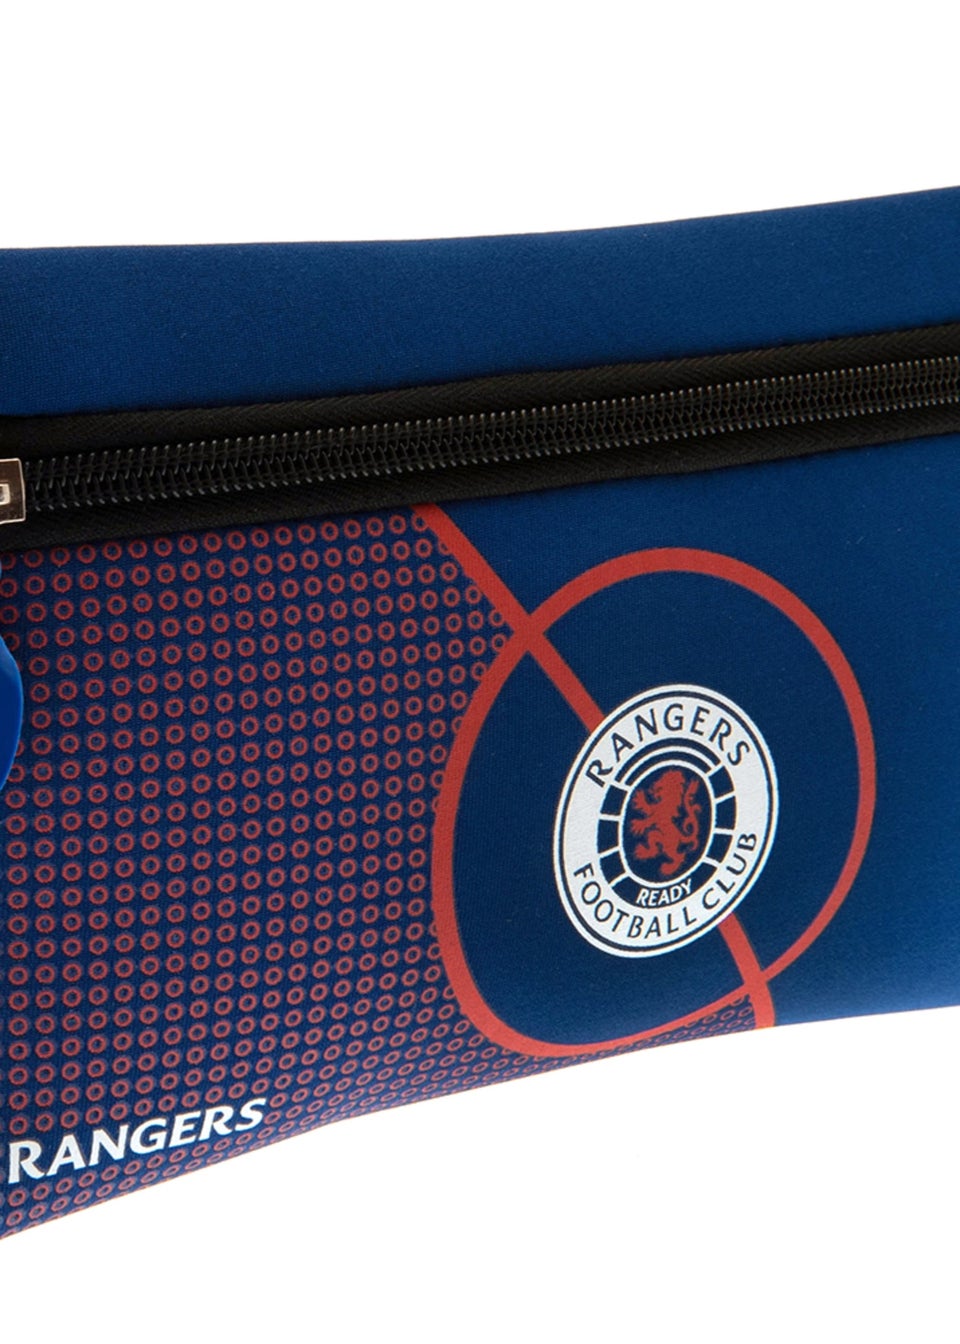 Rangers FC Blue Crest Pencil Case